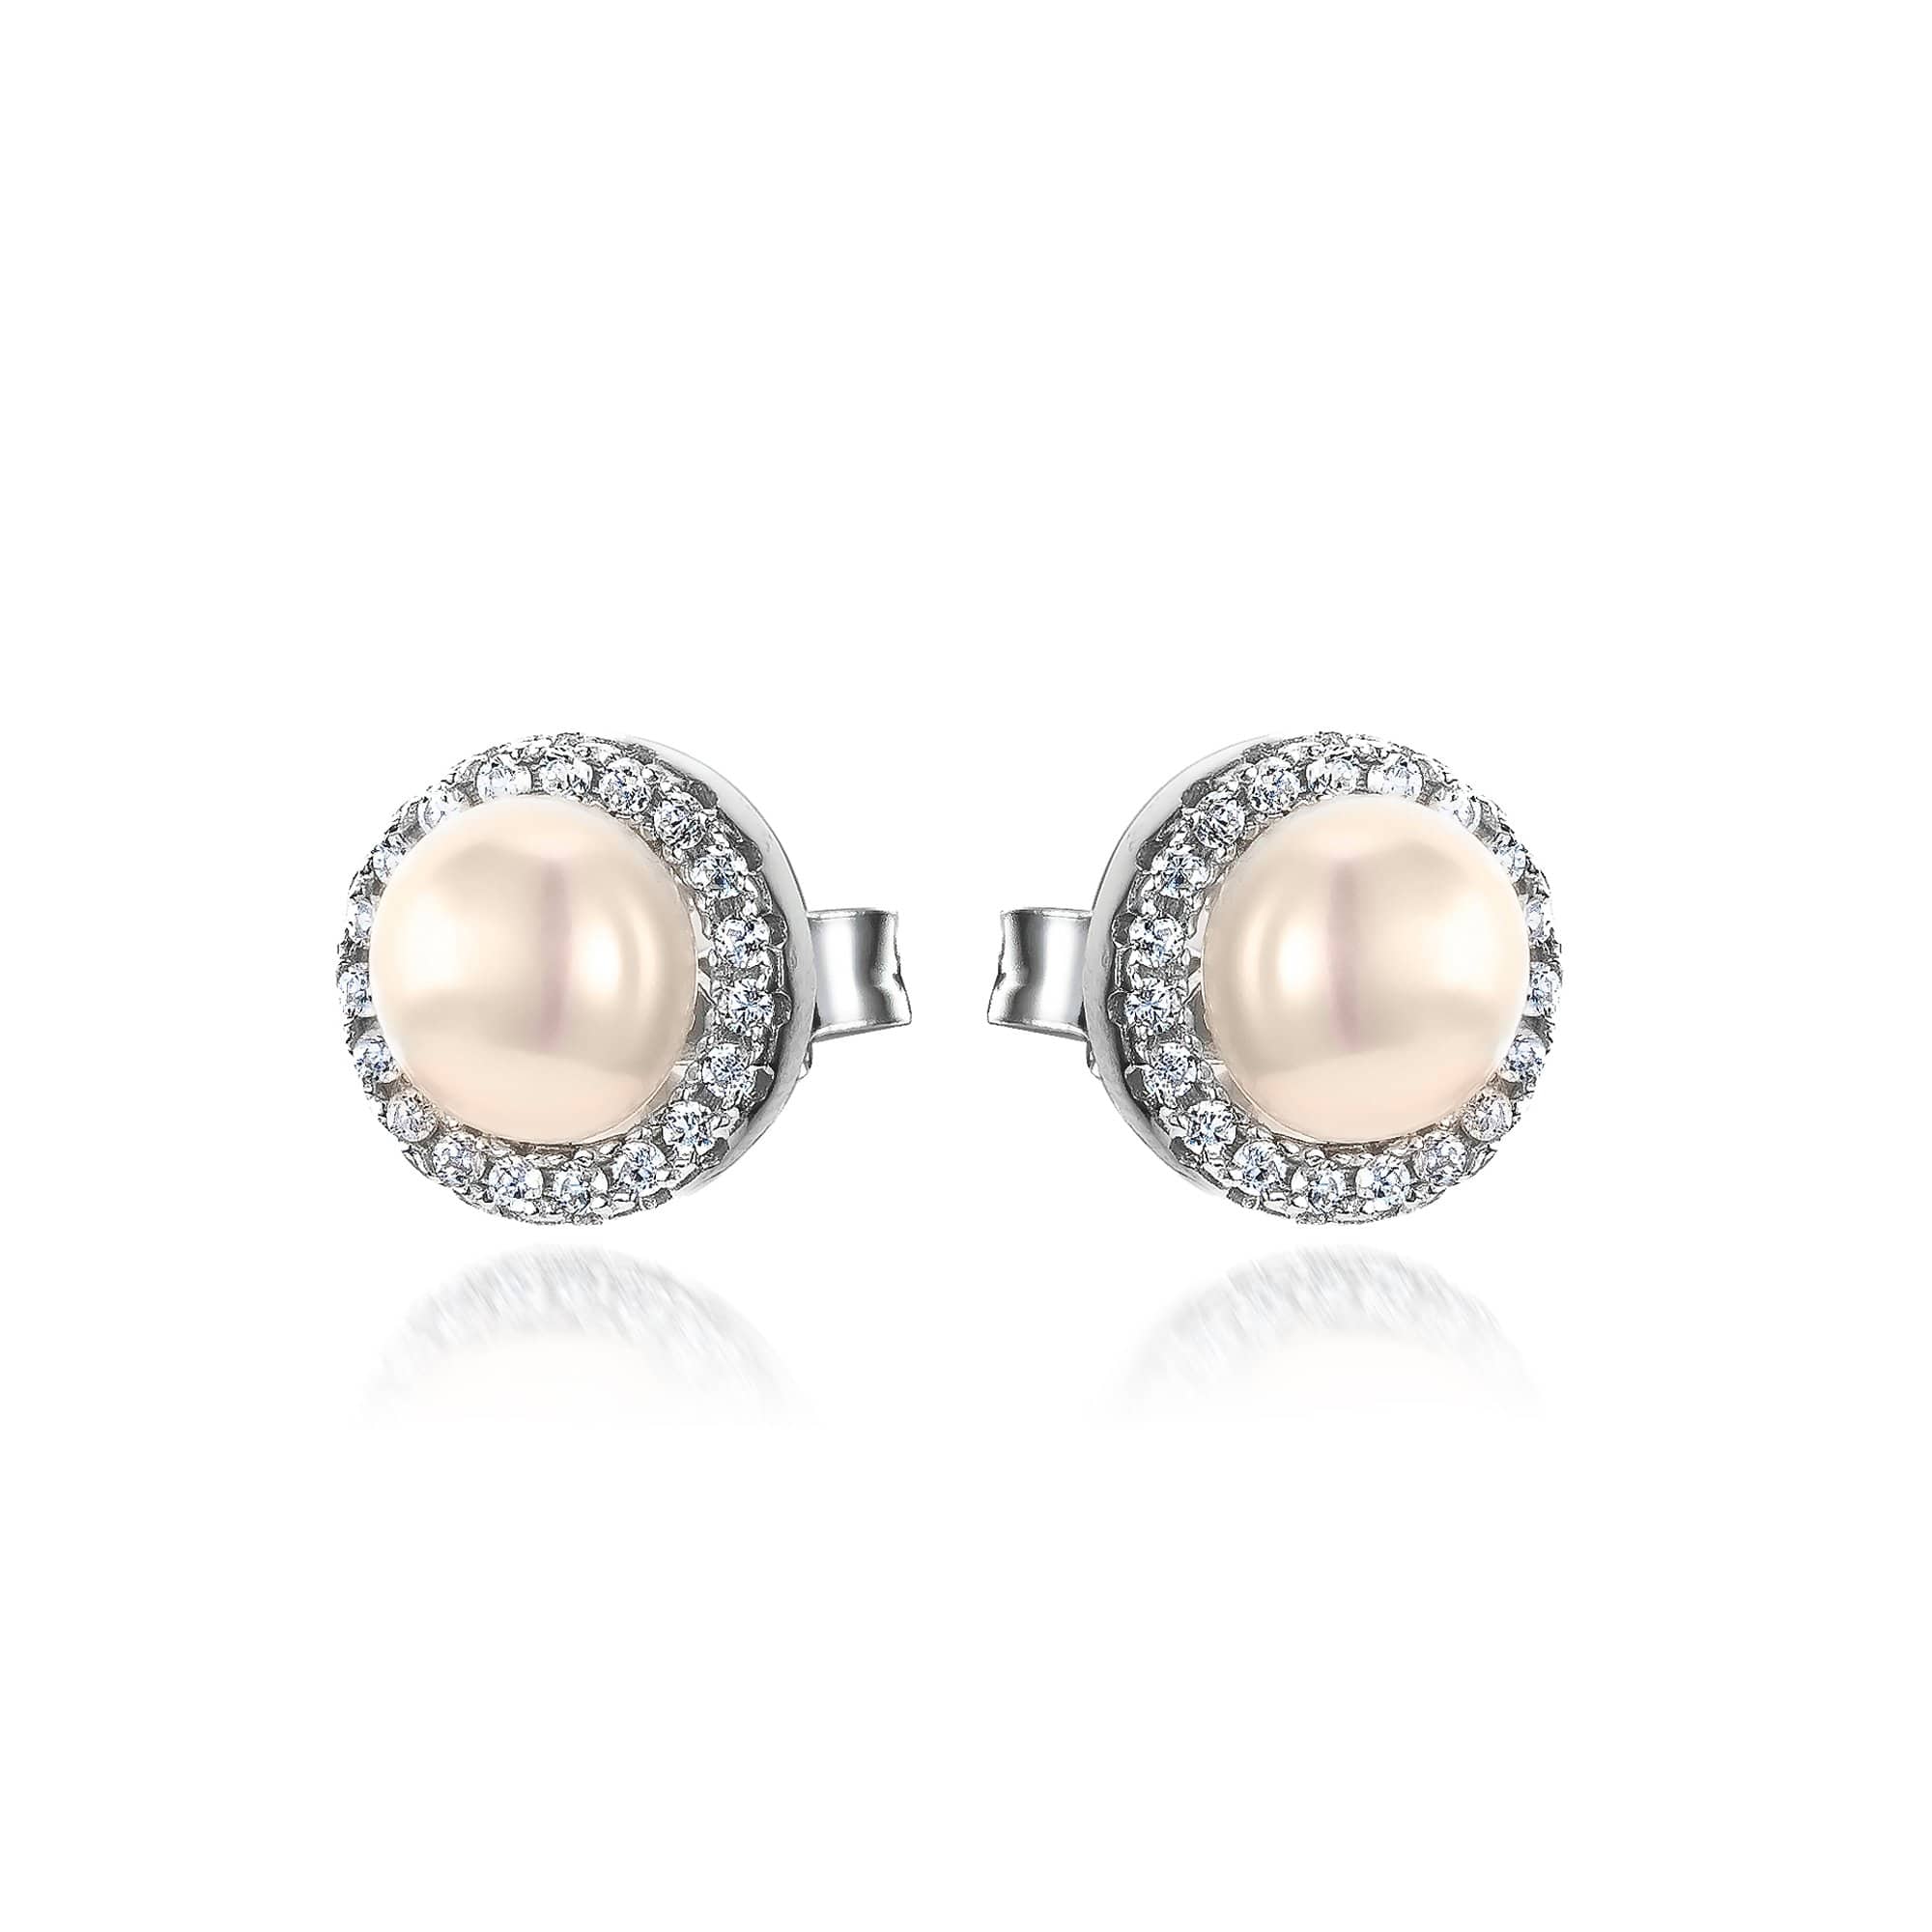 Lynora Jewellery Earring Sterling Silver / Freshwater Pearl Fresh Water Pearl Earrings Sterling Silver